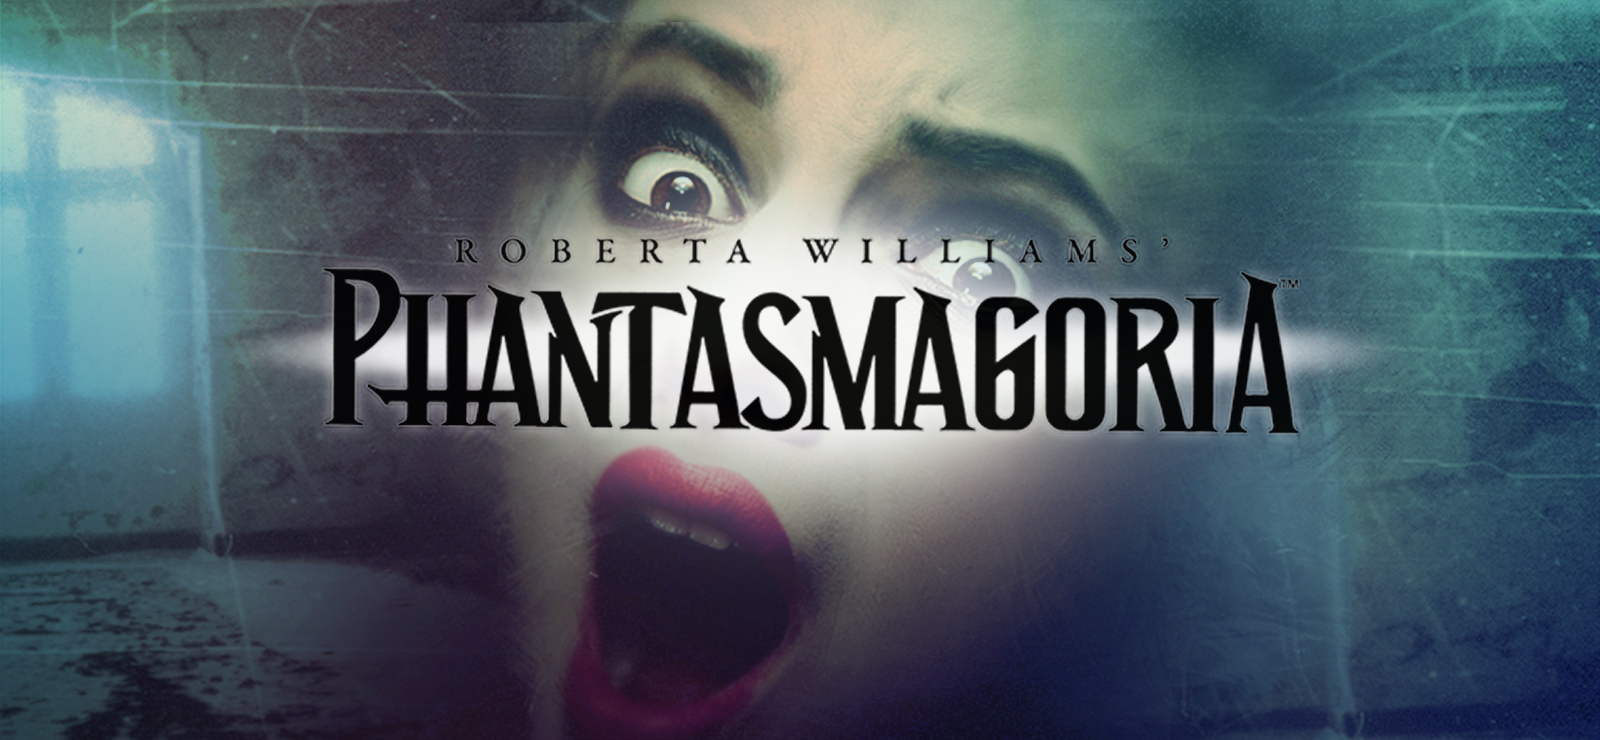 download phantasmagoria sega saturn